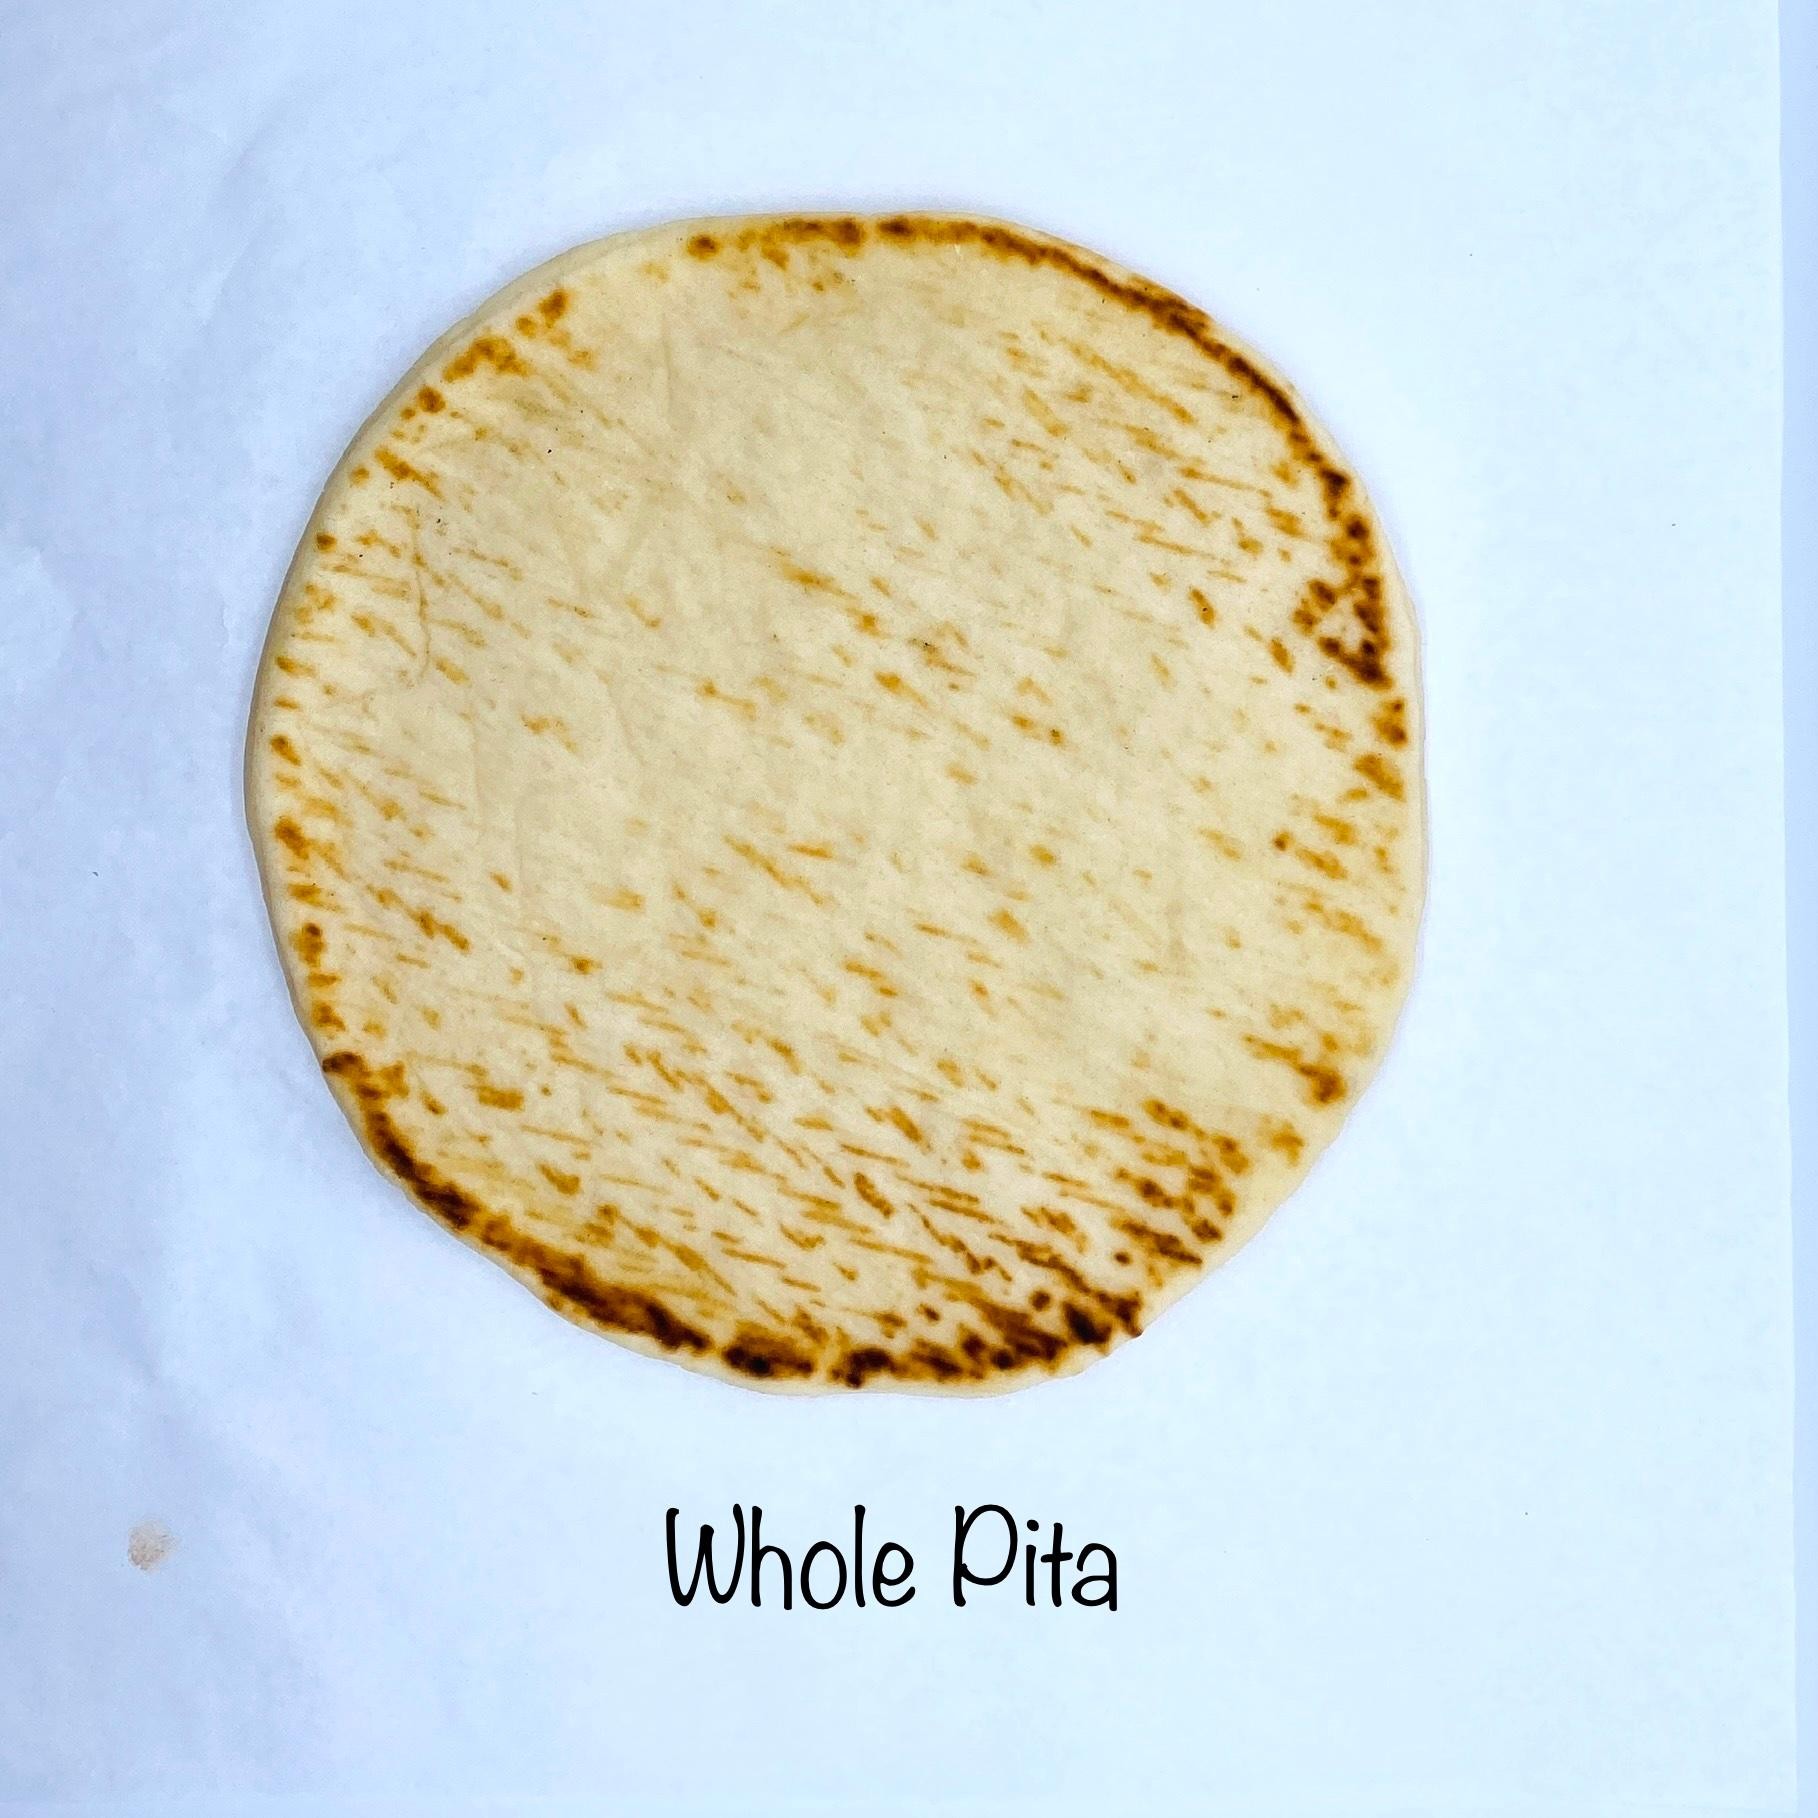 Hot Pita Bread